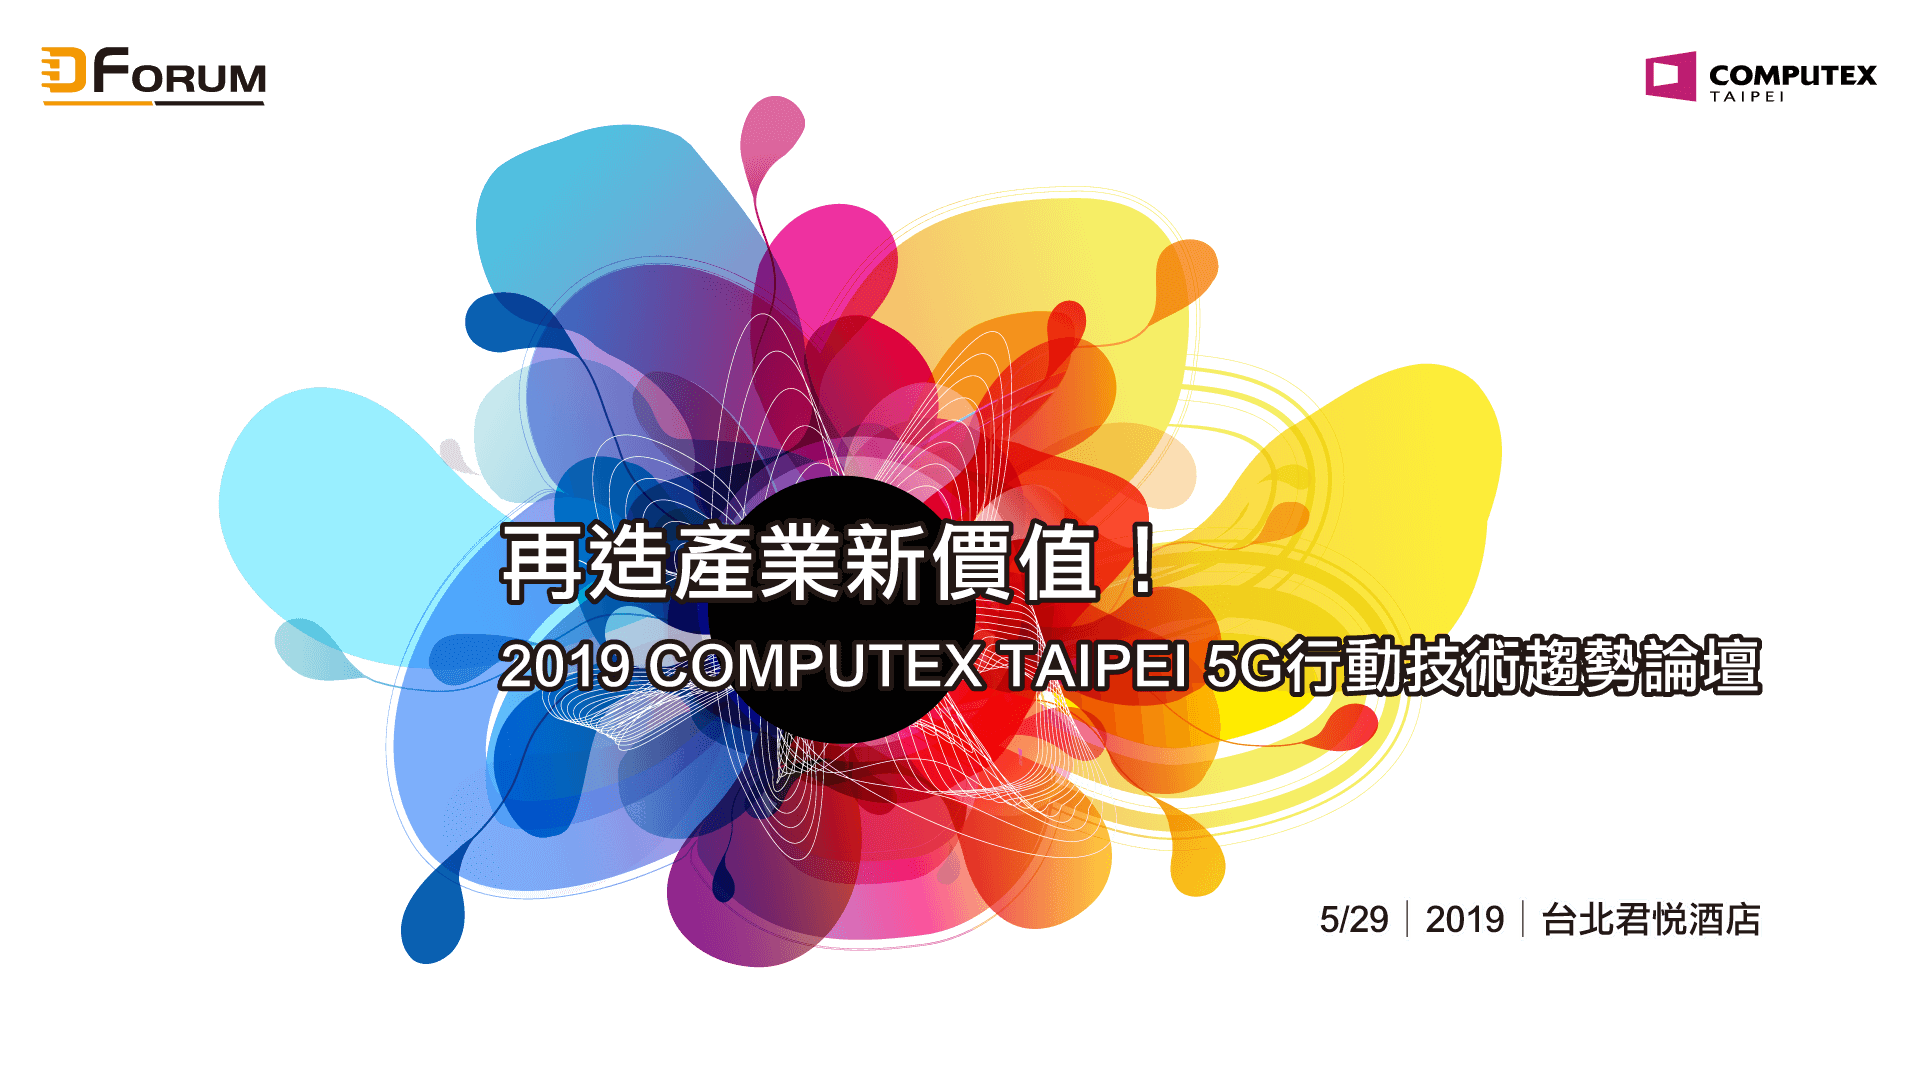 再造產業新價值！2019 COMPUTEX TAIPEI 5G行動技術趨勢論壇